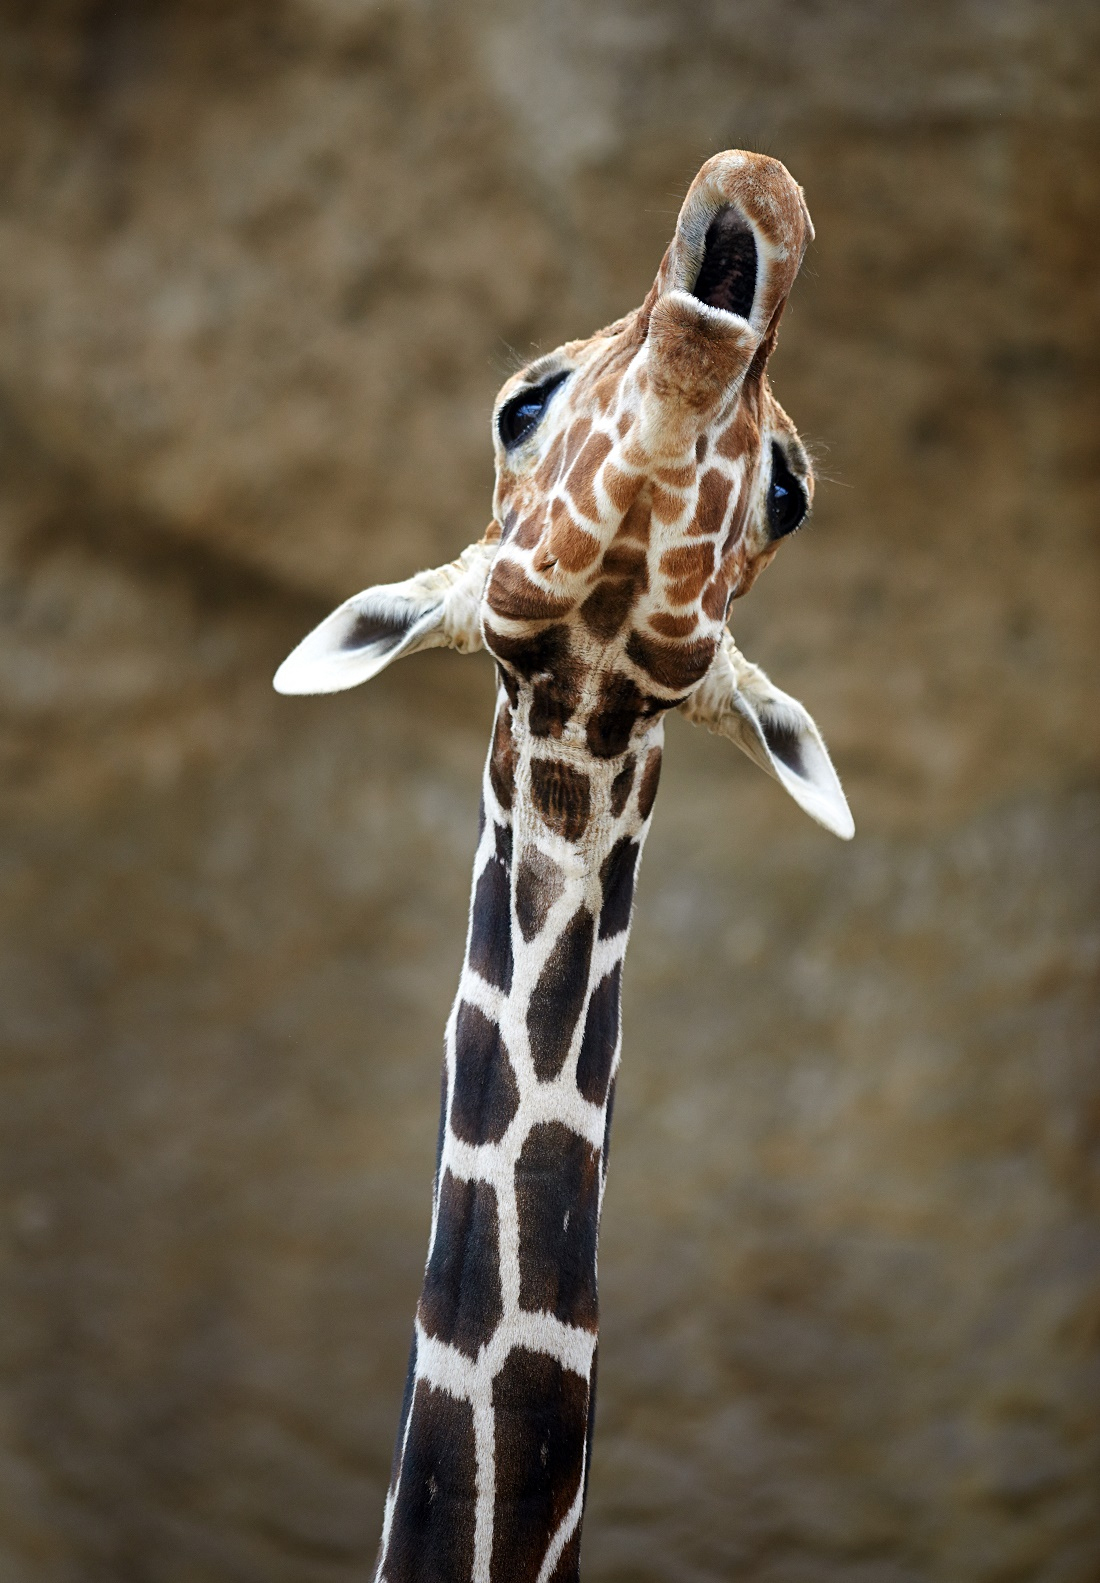 Warum Sind Giraffen-Hälse So Lang? | Duda.news ganzes Warum Haben Giraffen Einen Langen Hals